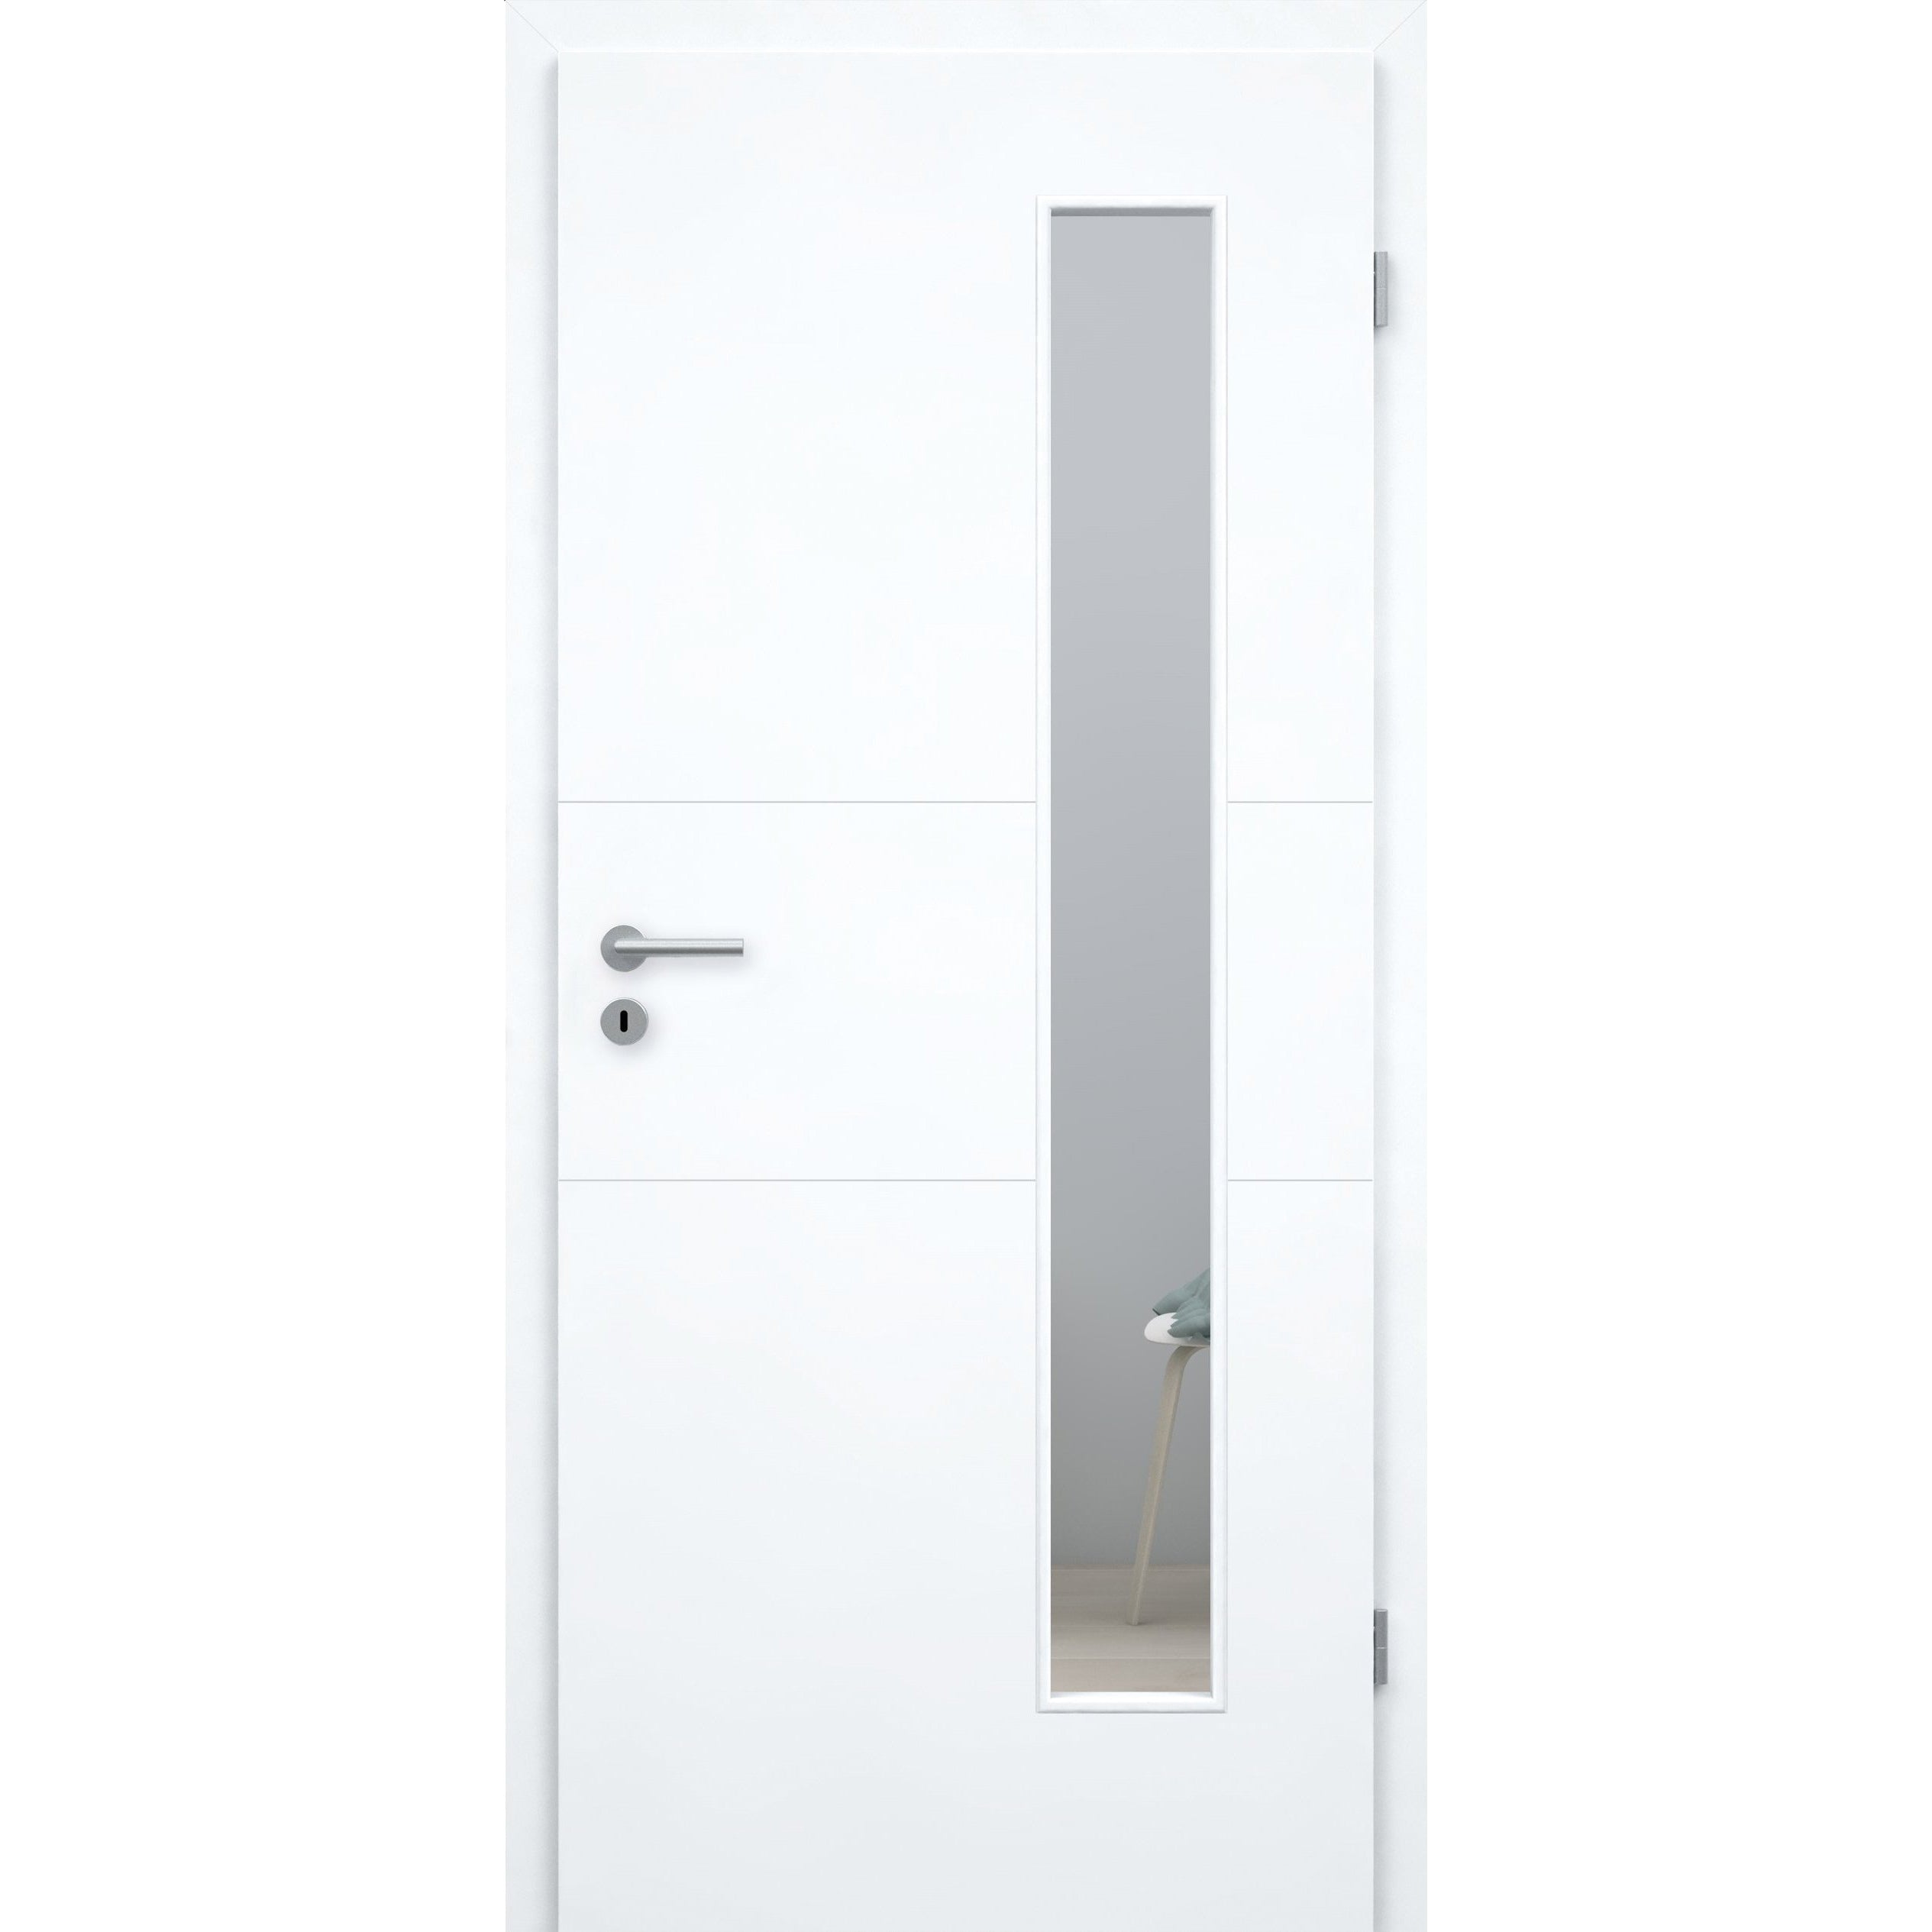 Zimmertür mit Lichtausschnitt brillant-weiß 2 Rillen quer Designkante - Modell Designtür Q23LAB